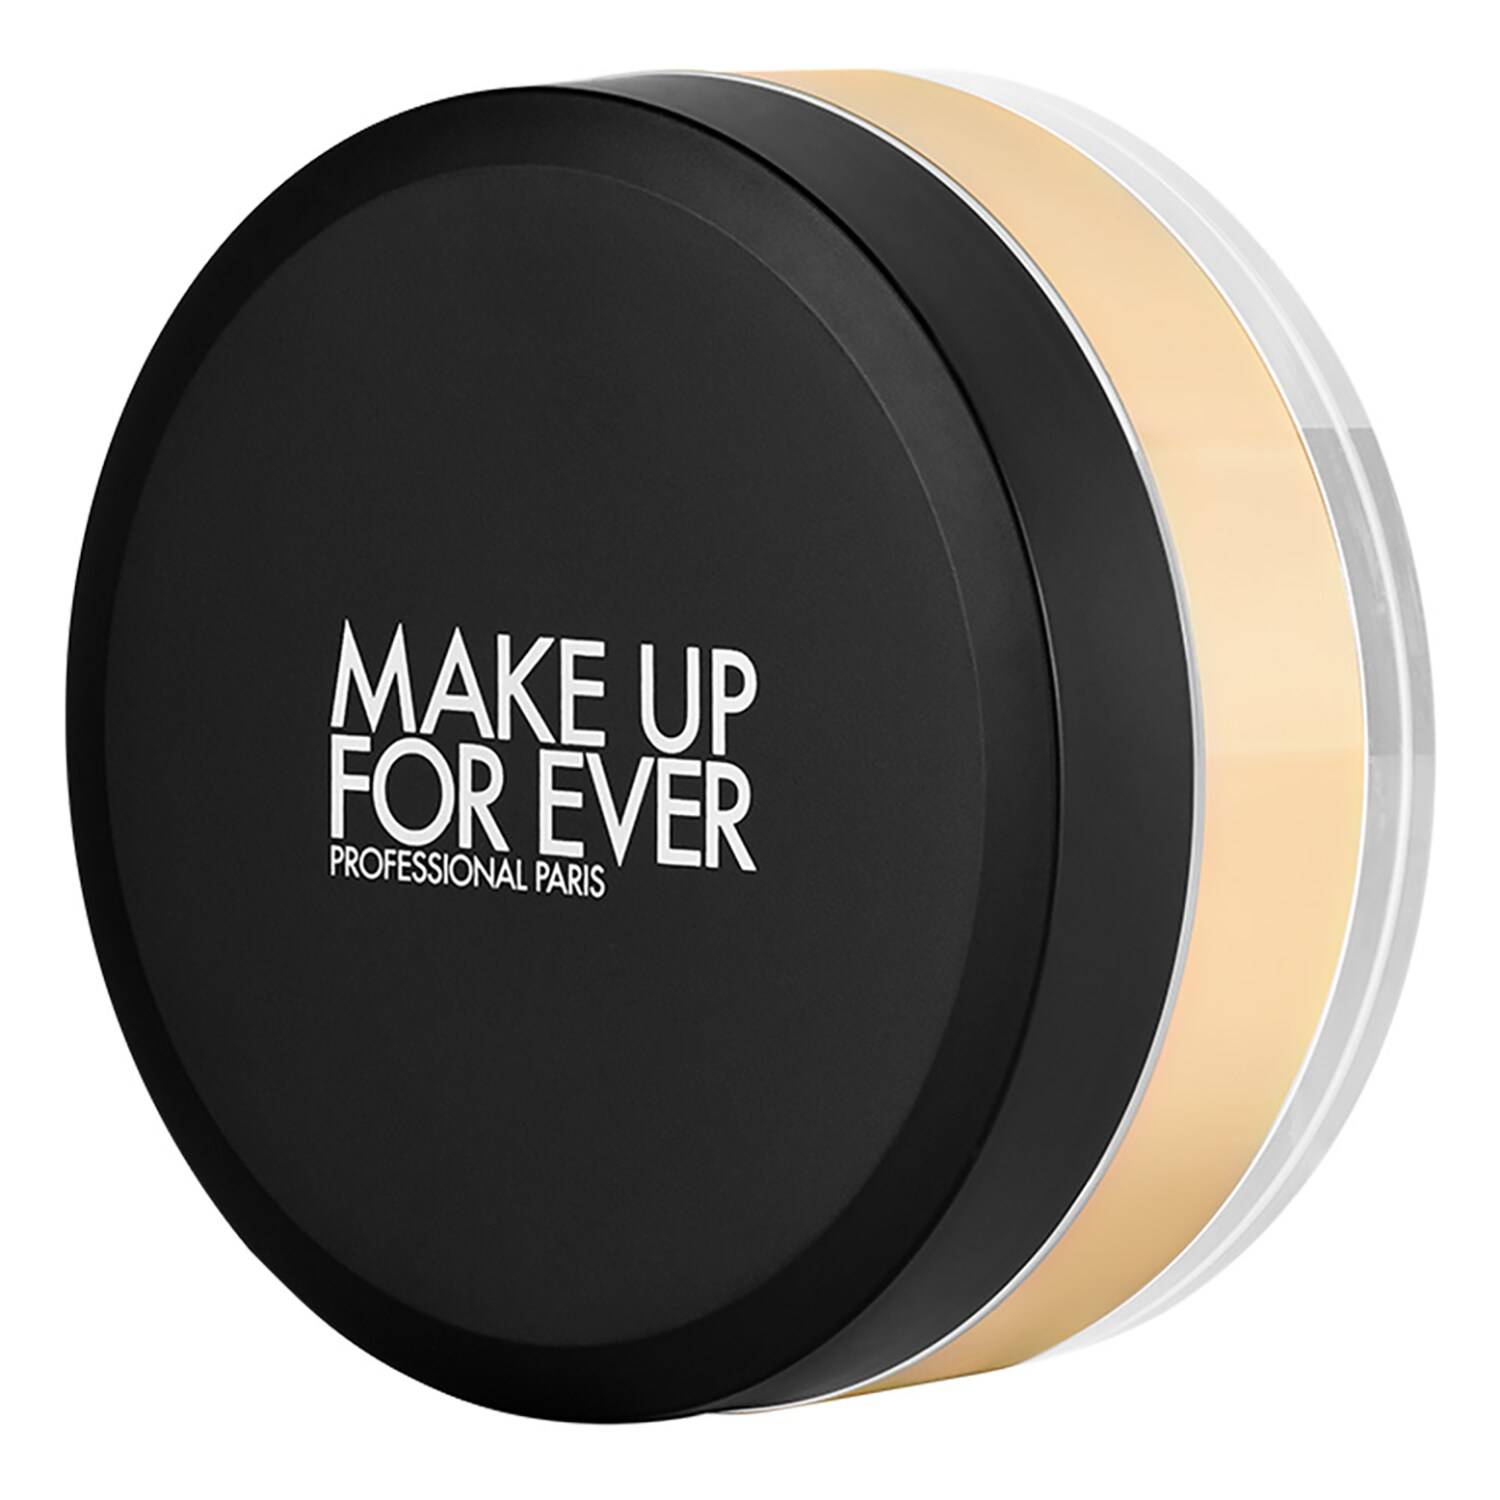 Make Up For Ever Hd Skin Setting Loose Powder 18G 0.4 - Corrective Banana